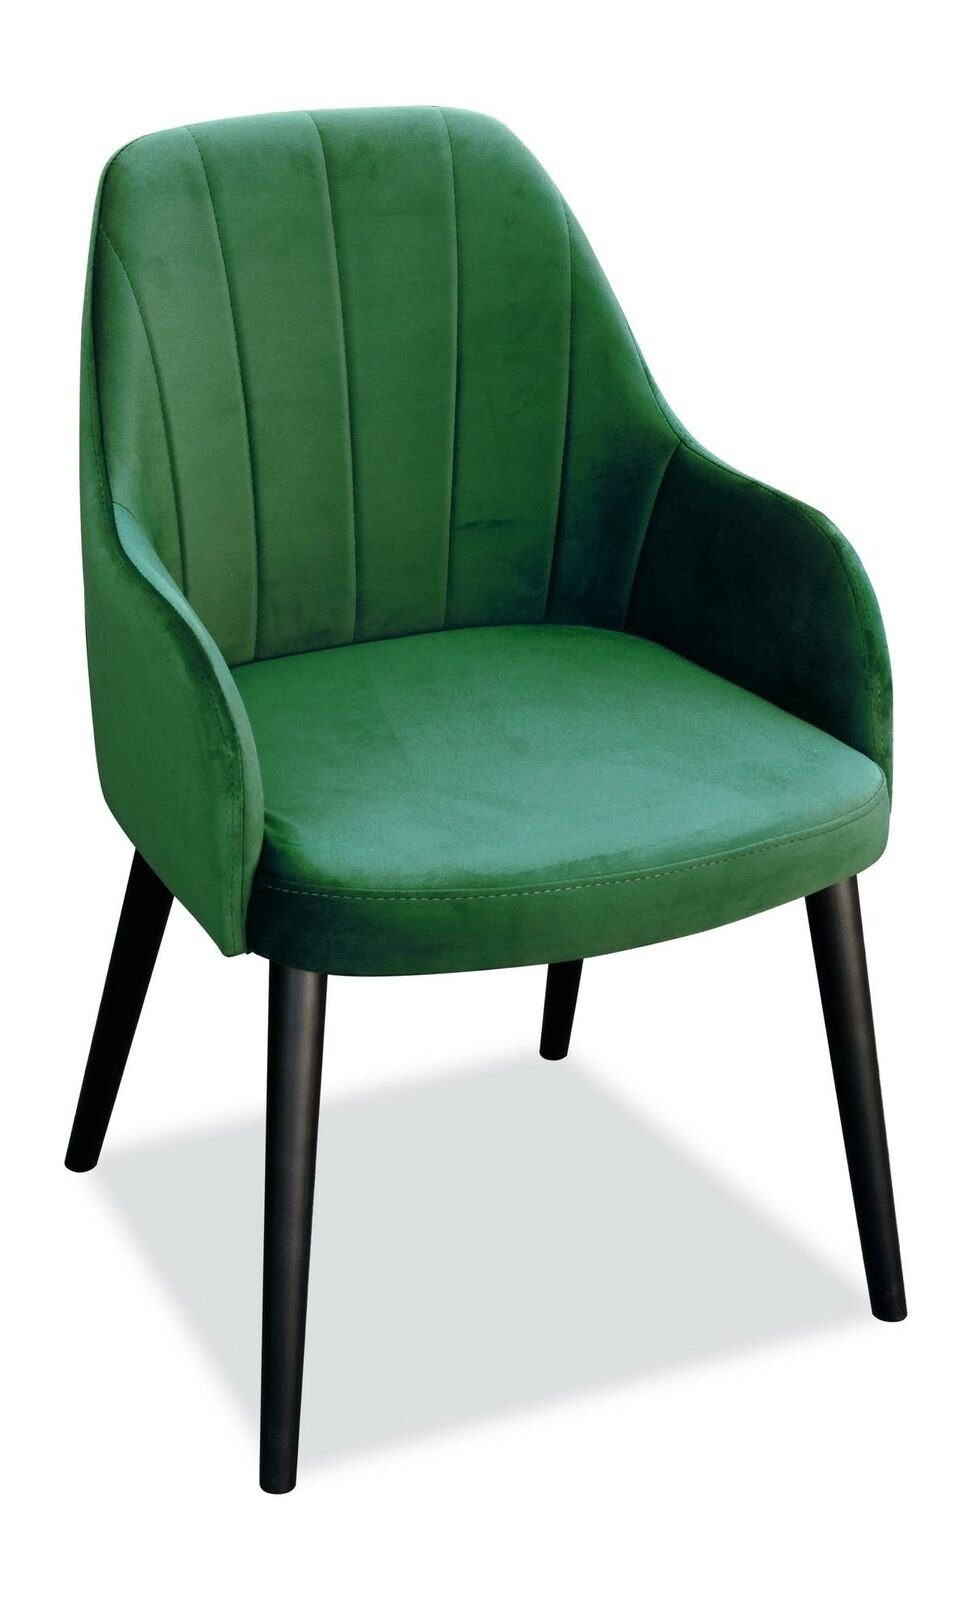 Stühle Stuhl, Textil Sessel Holz Stühle 8x Esszimmer Stoff Set JVmoebel Stuhl Designer Polster